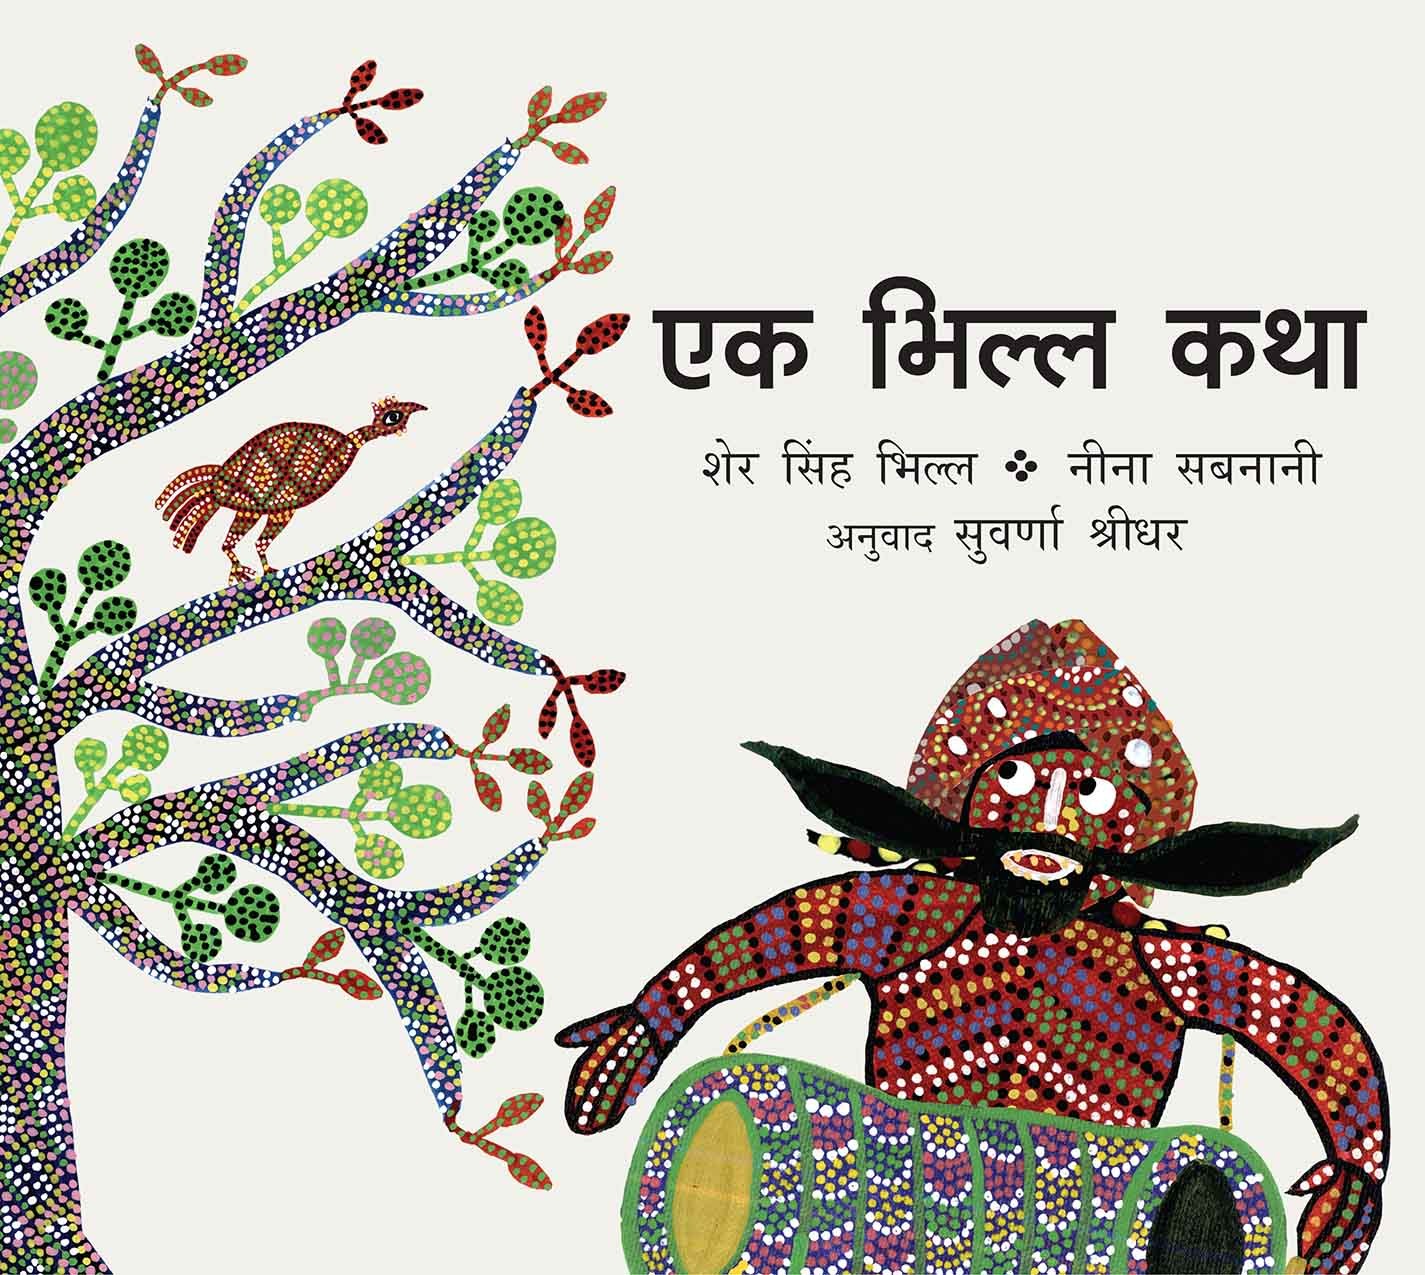 A Bhil Story/Ek Bhil Katha (Marathi)